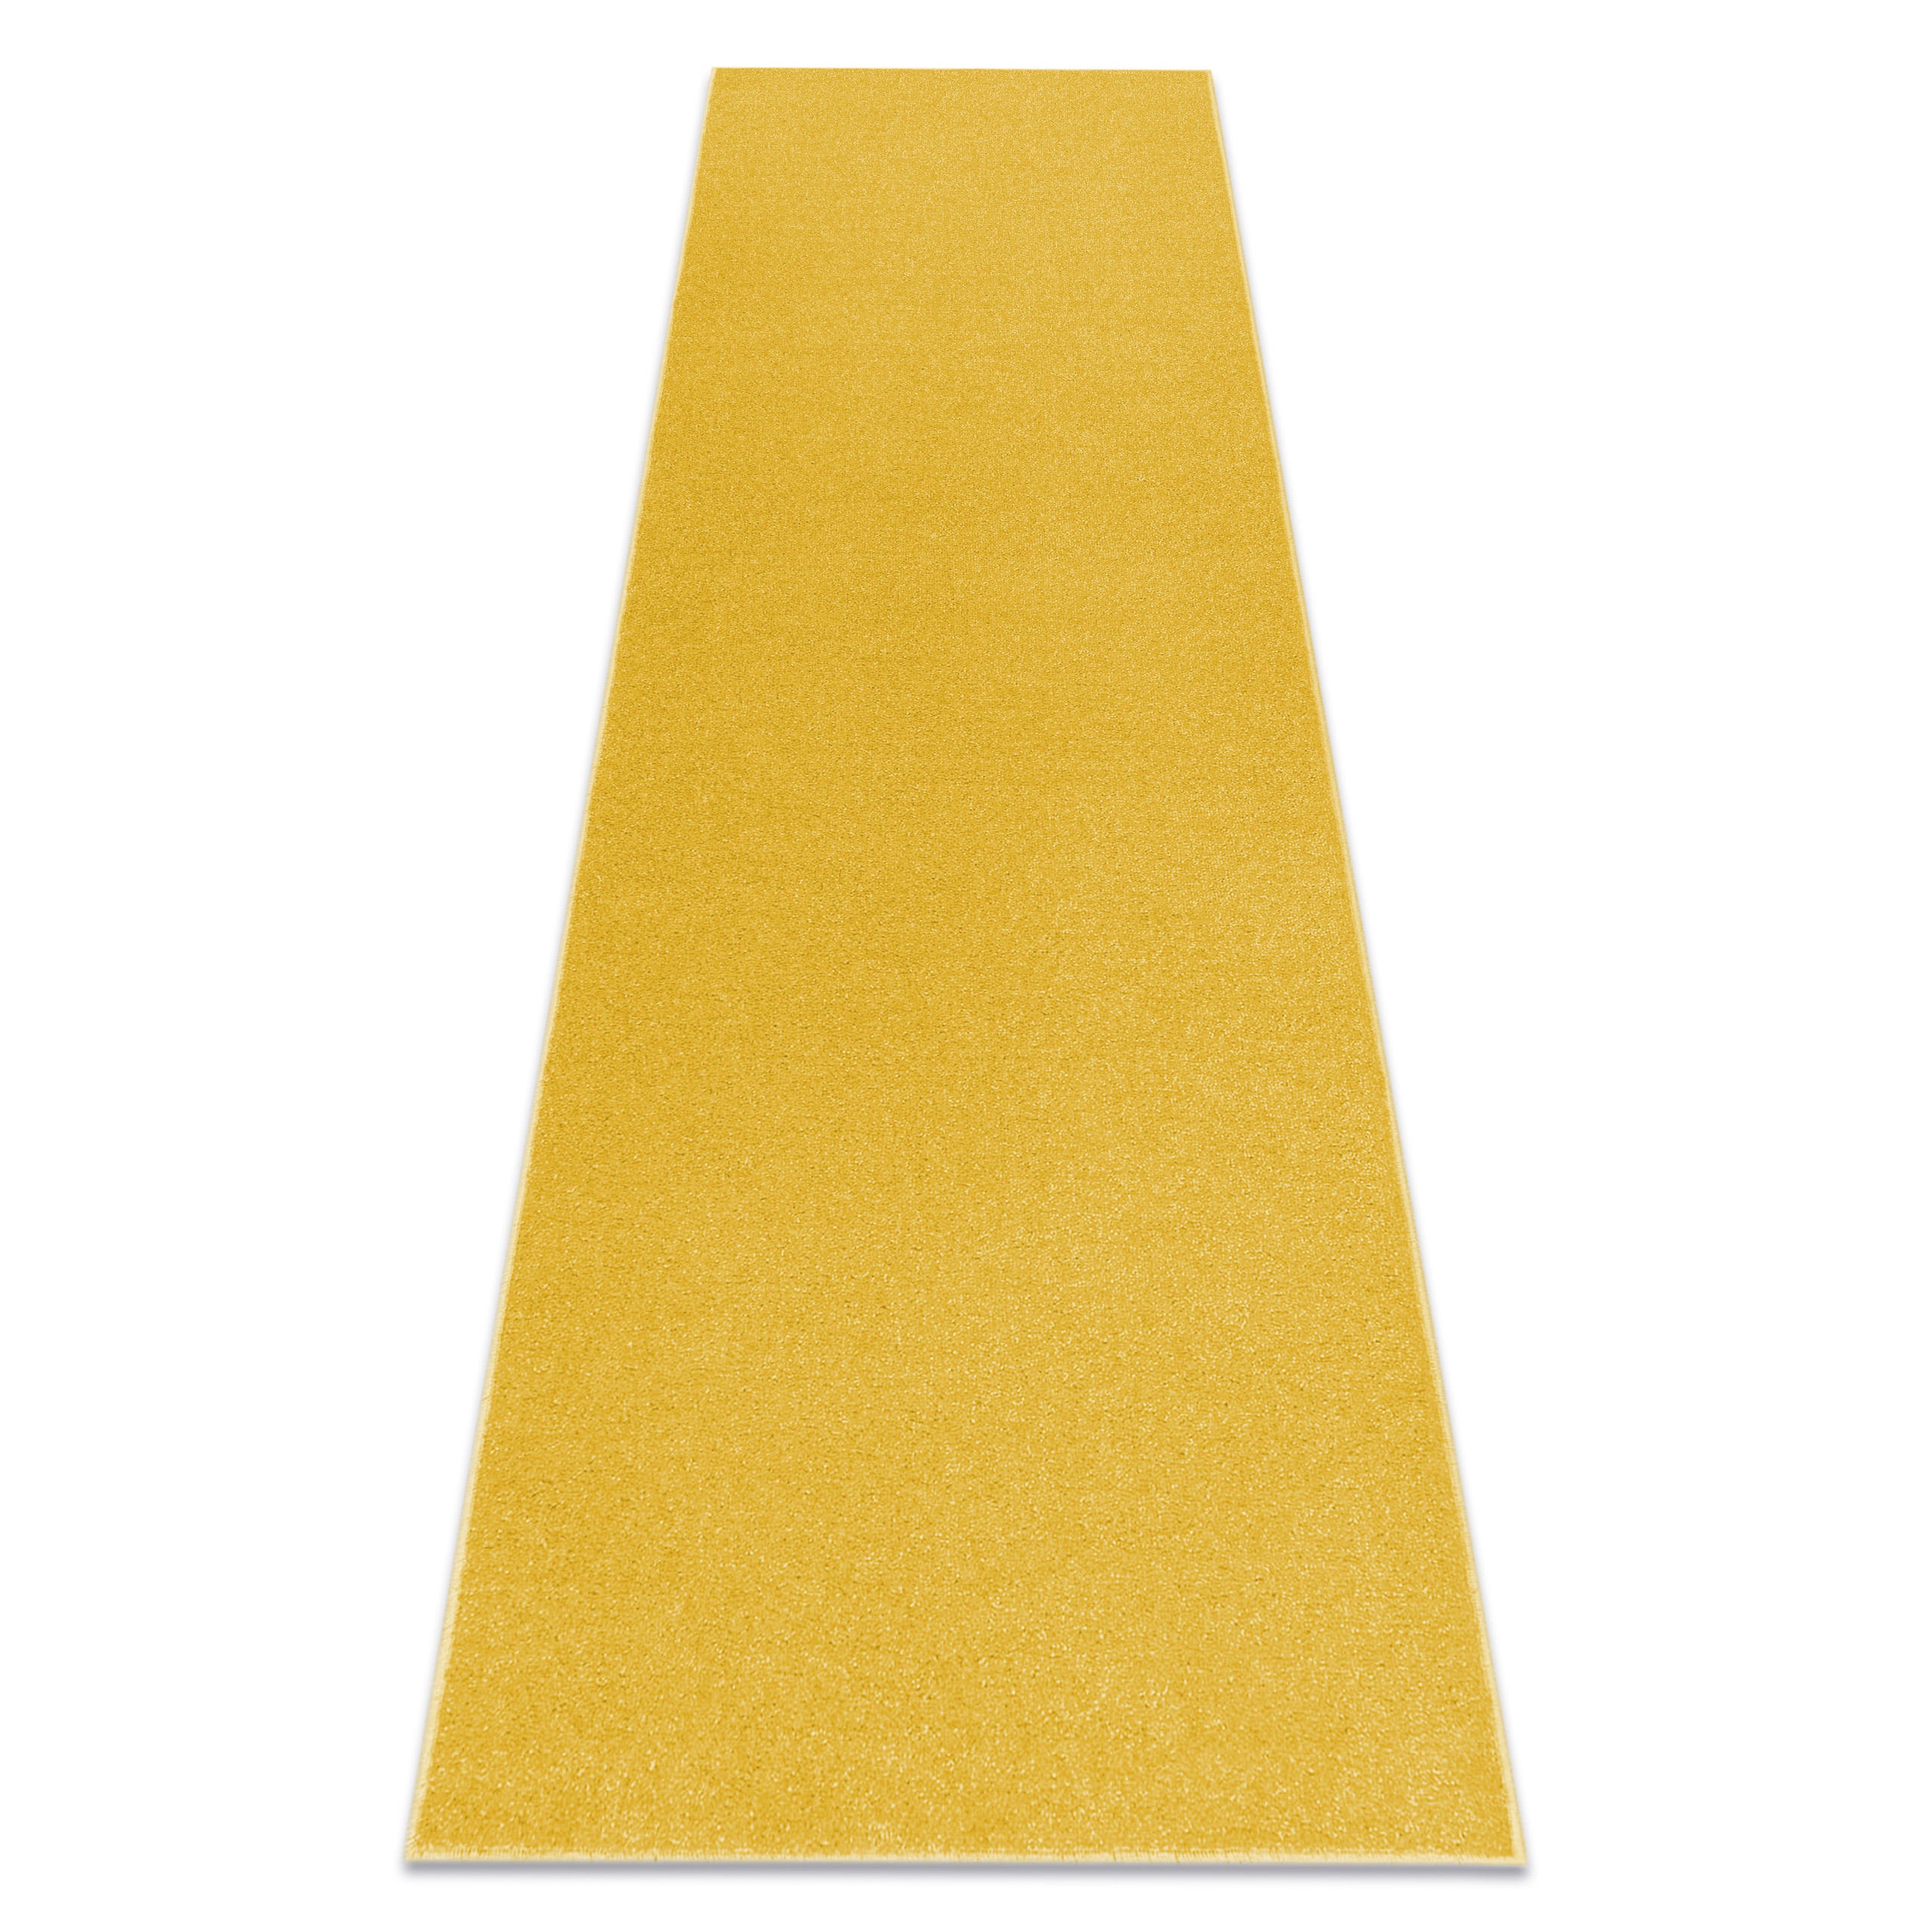 TAPPETO - MOQUETTE ETON giallo yellow 100x200 cm